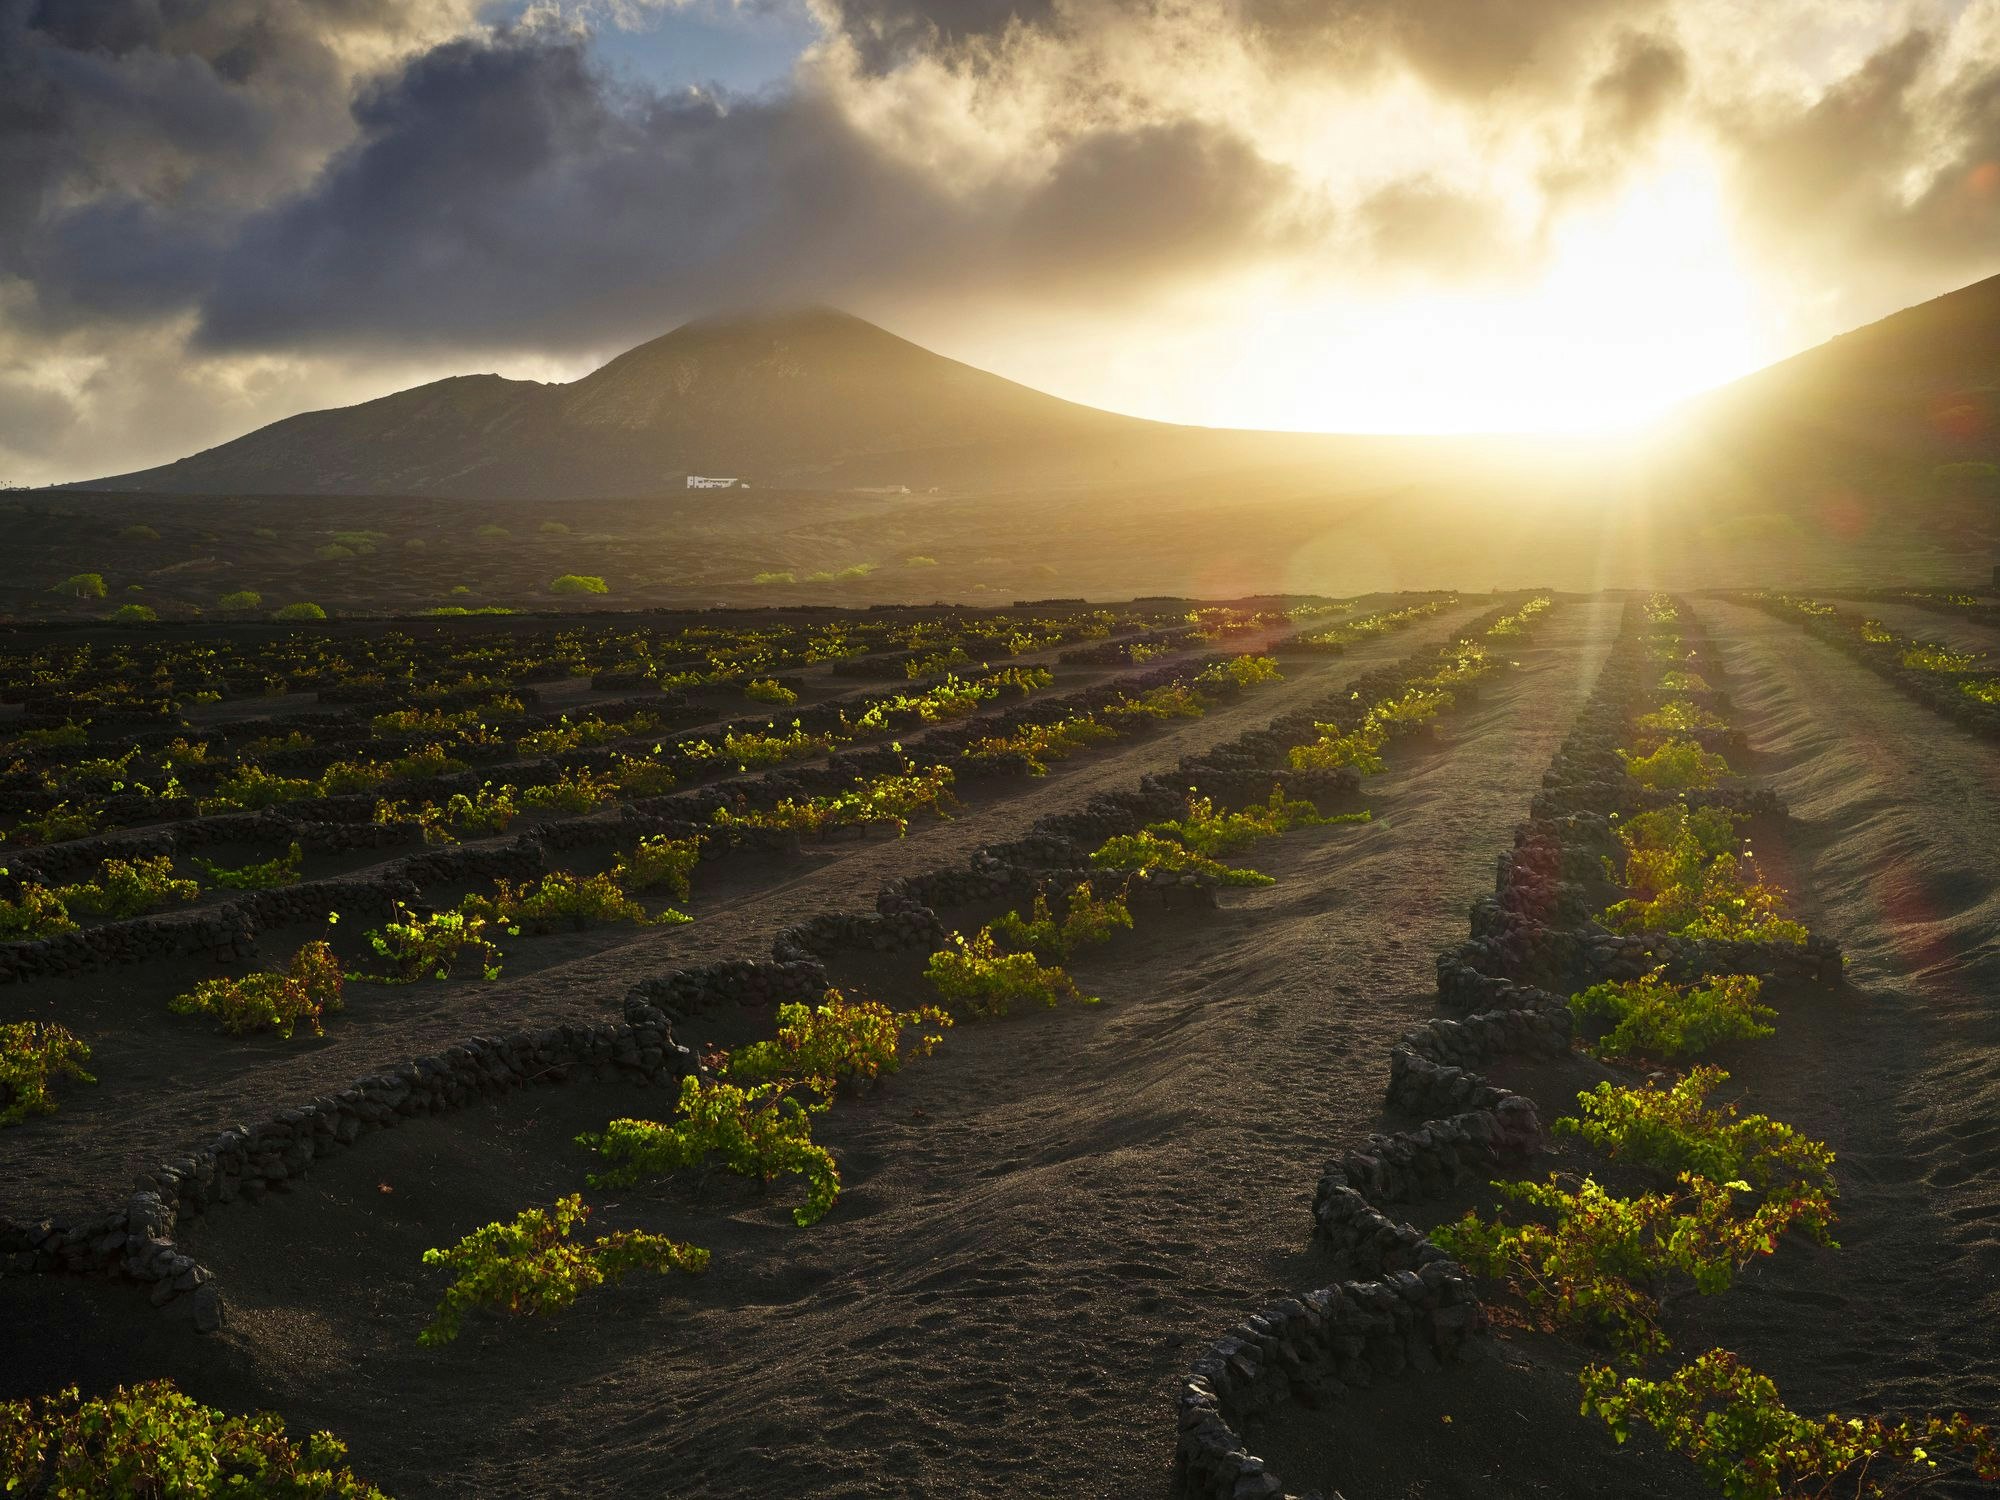 Weinreben ragen aus schwarzer Erde vor einer Vulkan-Landschaft.